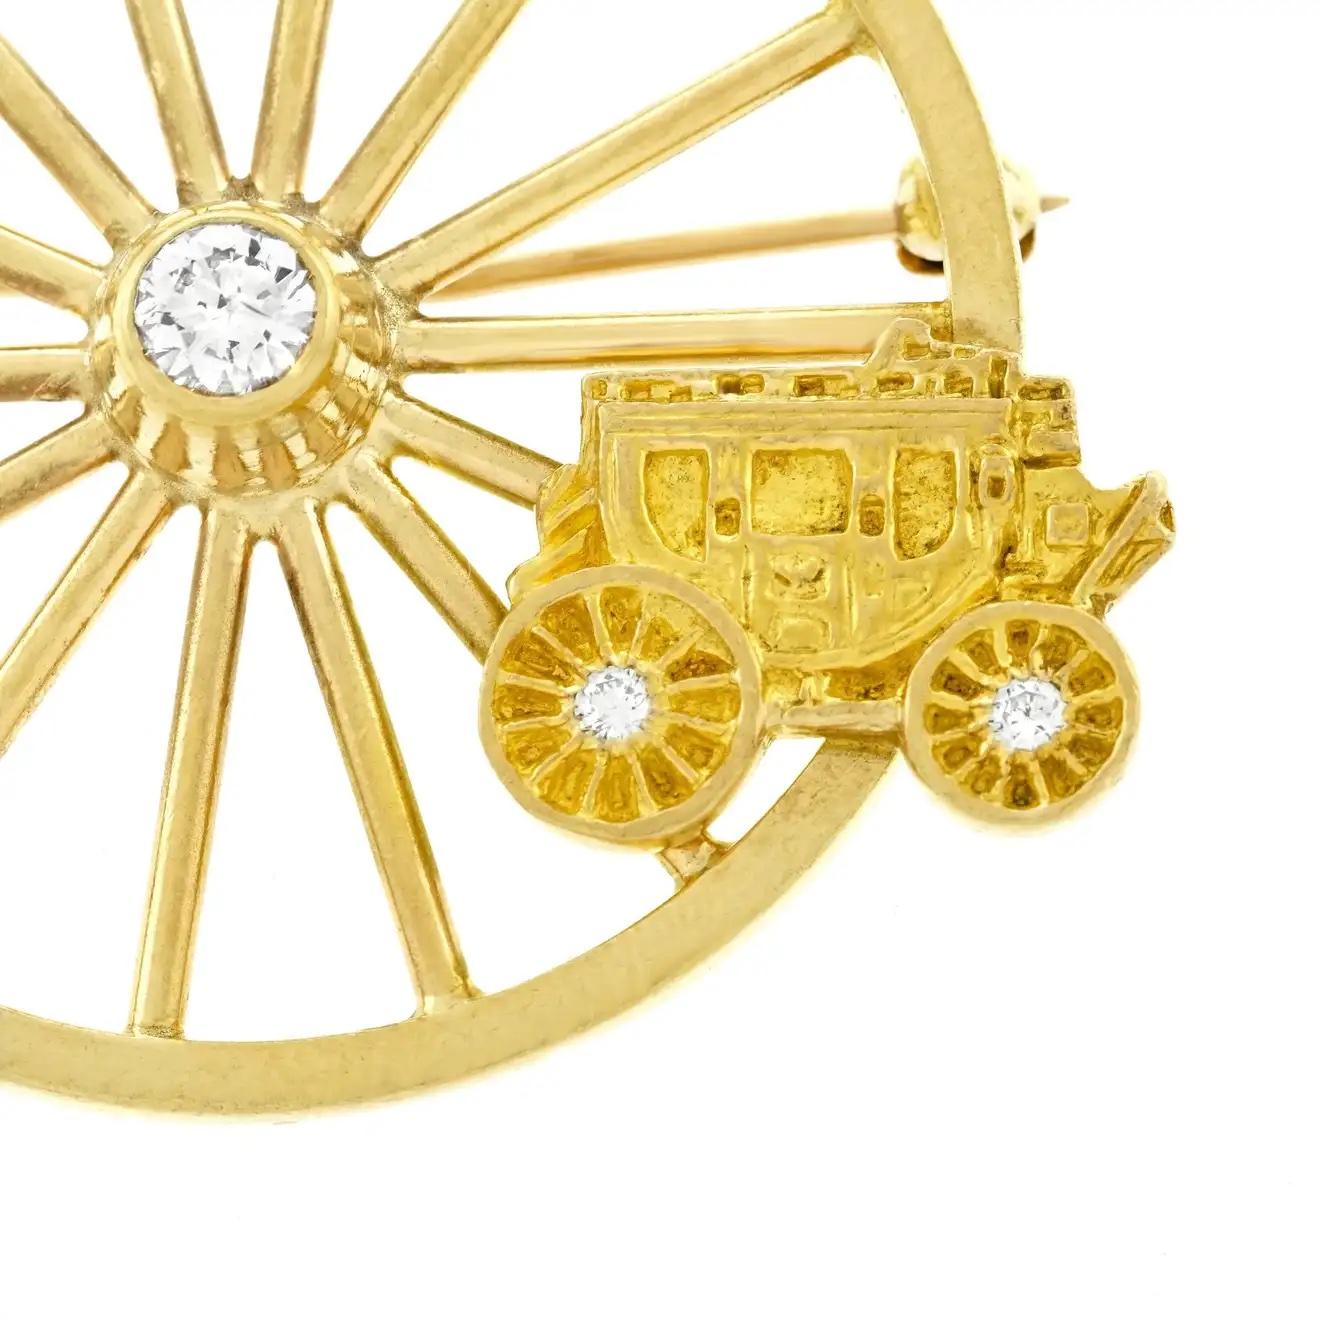 Diese charismatische Brosche von Tiffany & Co. zeigt ein charmantes Westernmotiv aus 14-karätigem Gelbgold. Das Design zeigt ein großes Speichenrad, das mit einem natürlichen Diamanten von 0,25 Karat in der Farbe G und Reinheit VS besetzt ist. Der